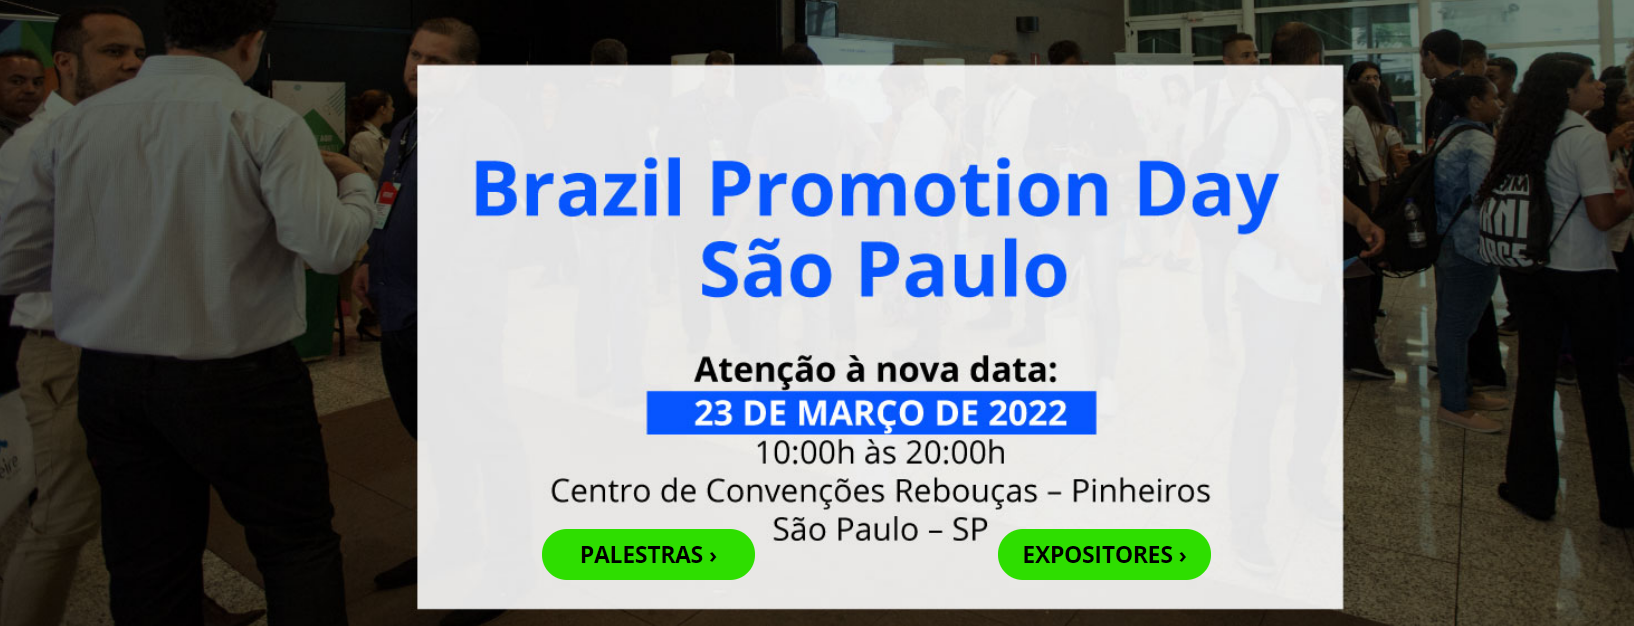 BRAZIL PROMOTION DAY: Edição nacional da principal feira de